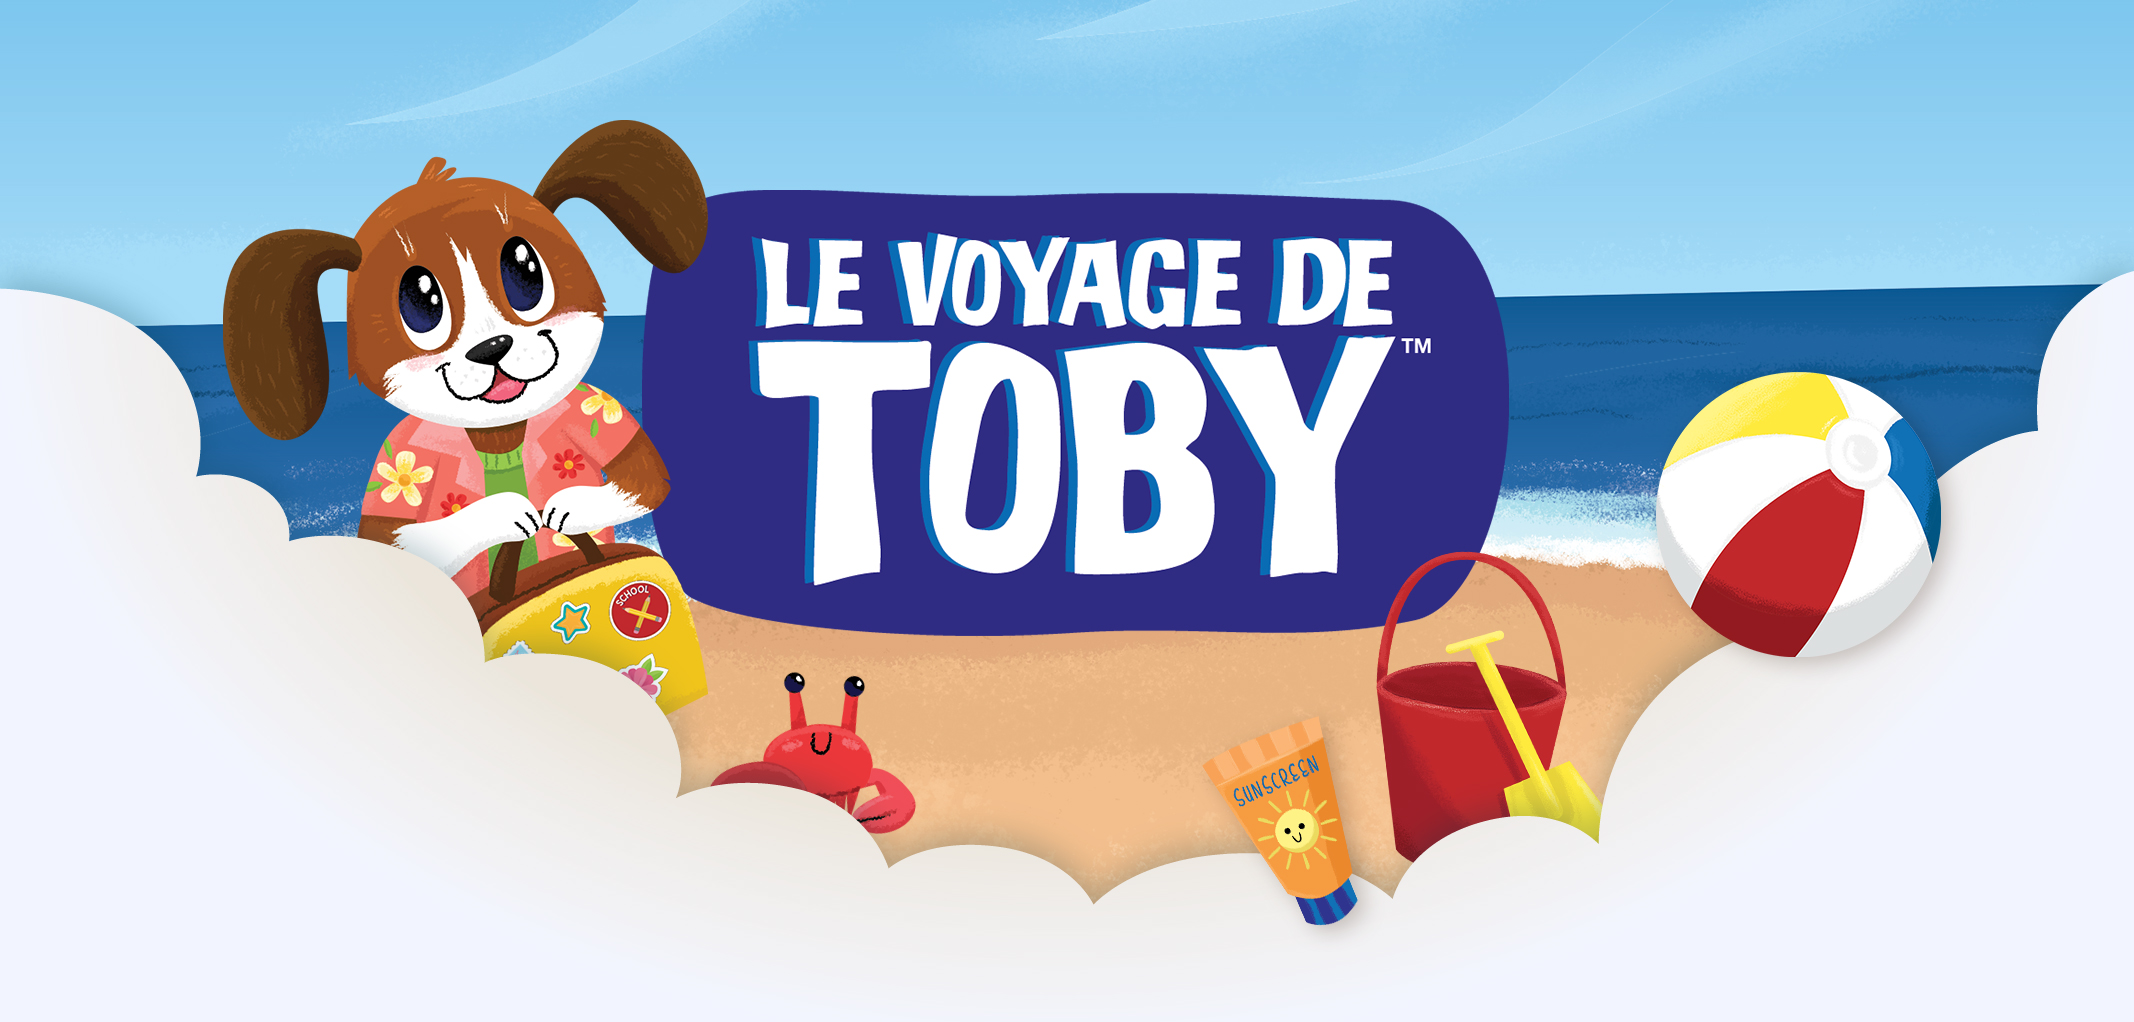 Le voyage de Toby